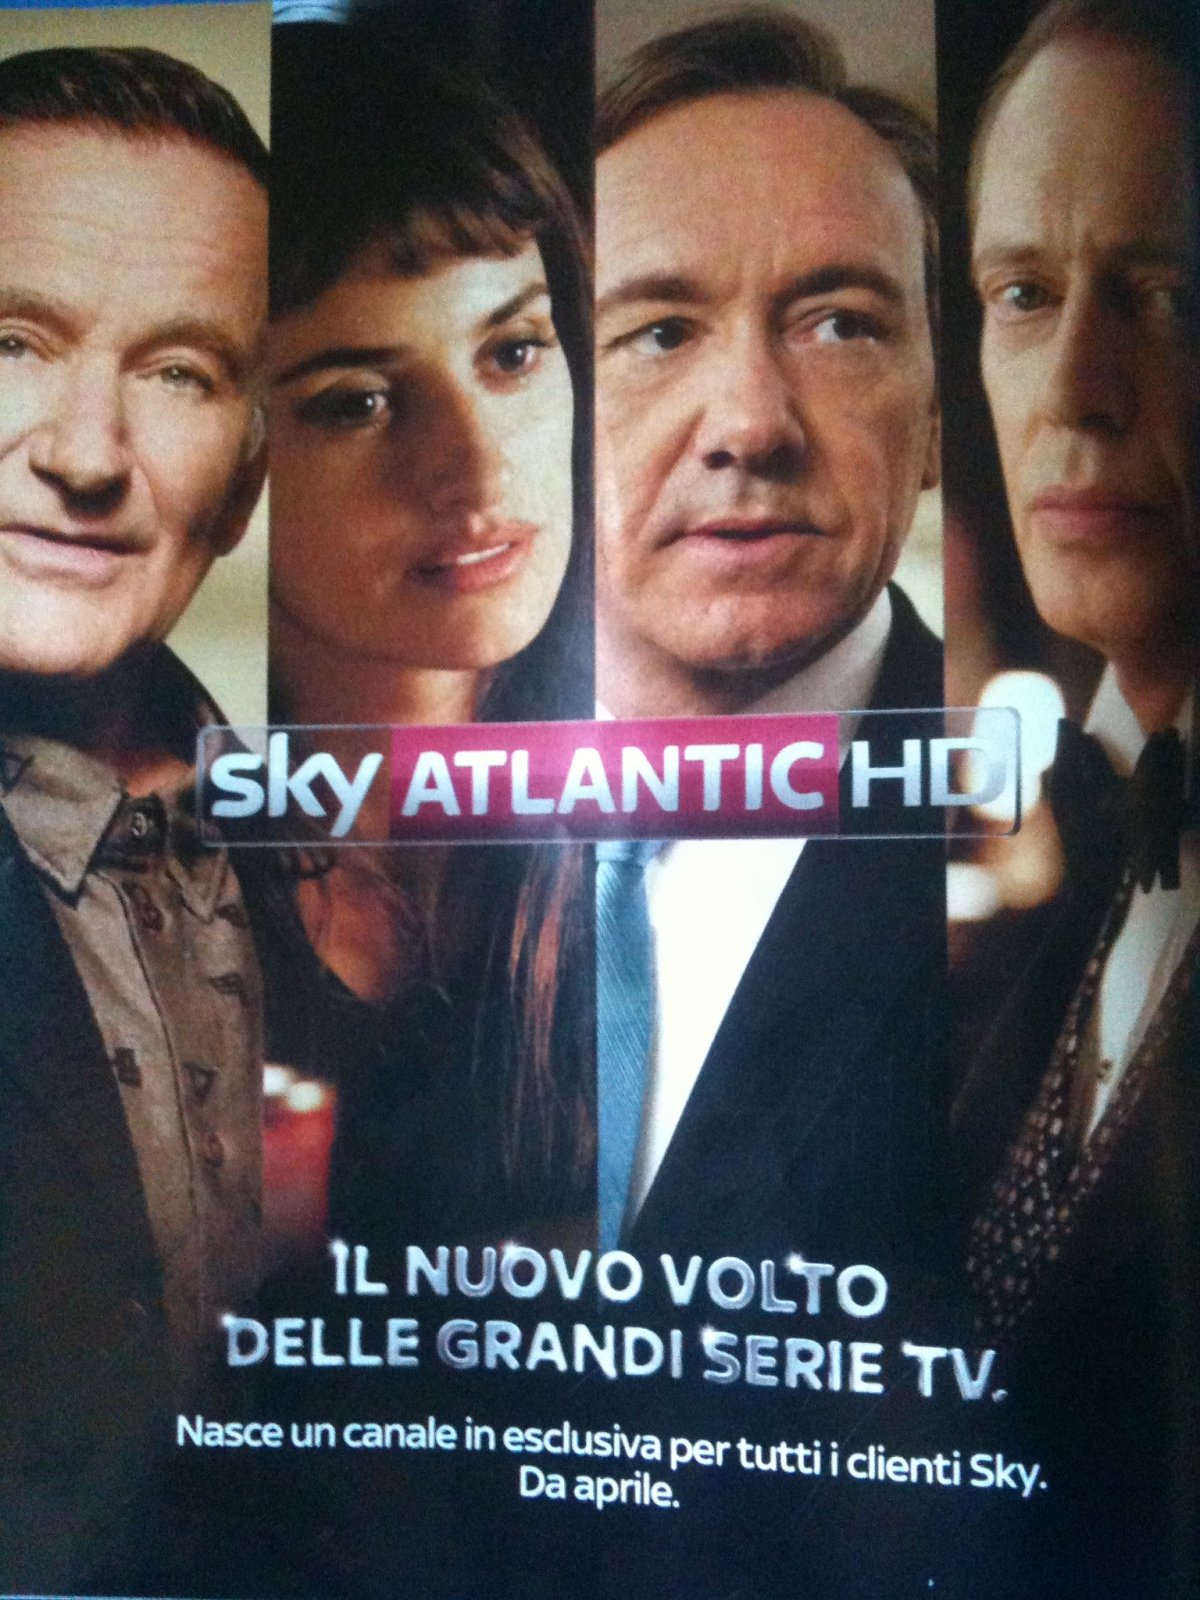 Sky Atlantic HD dal 9 Aprile le grandi storie in esclusiva per tutti i clienti Sky